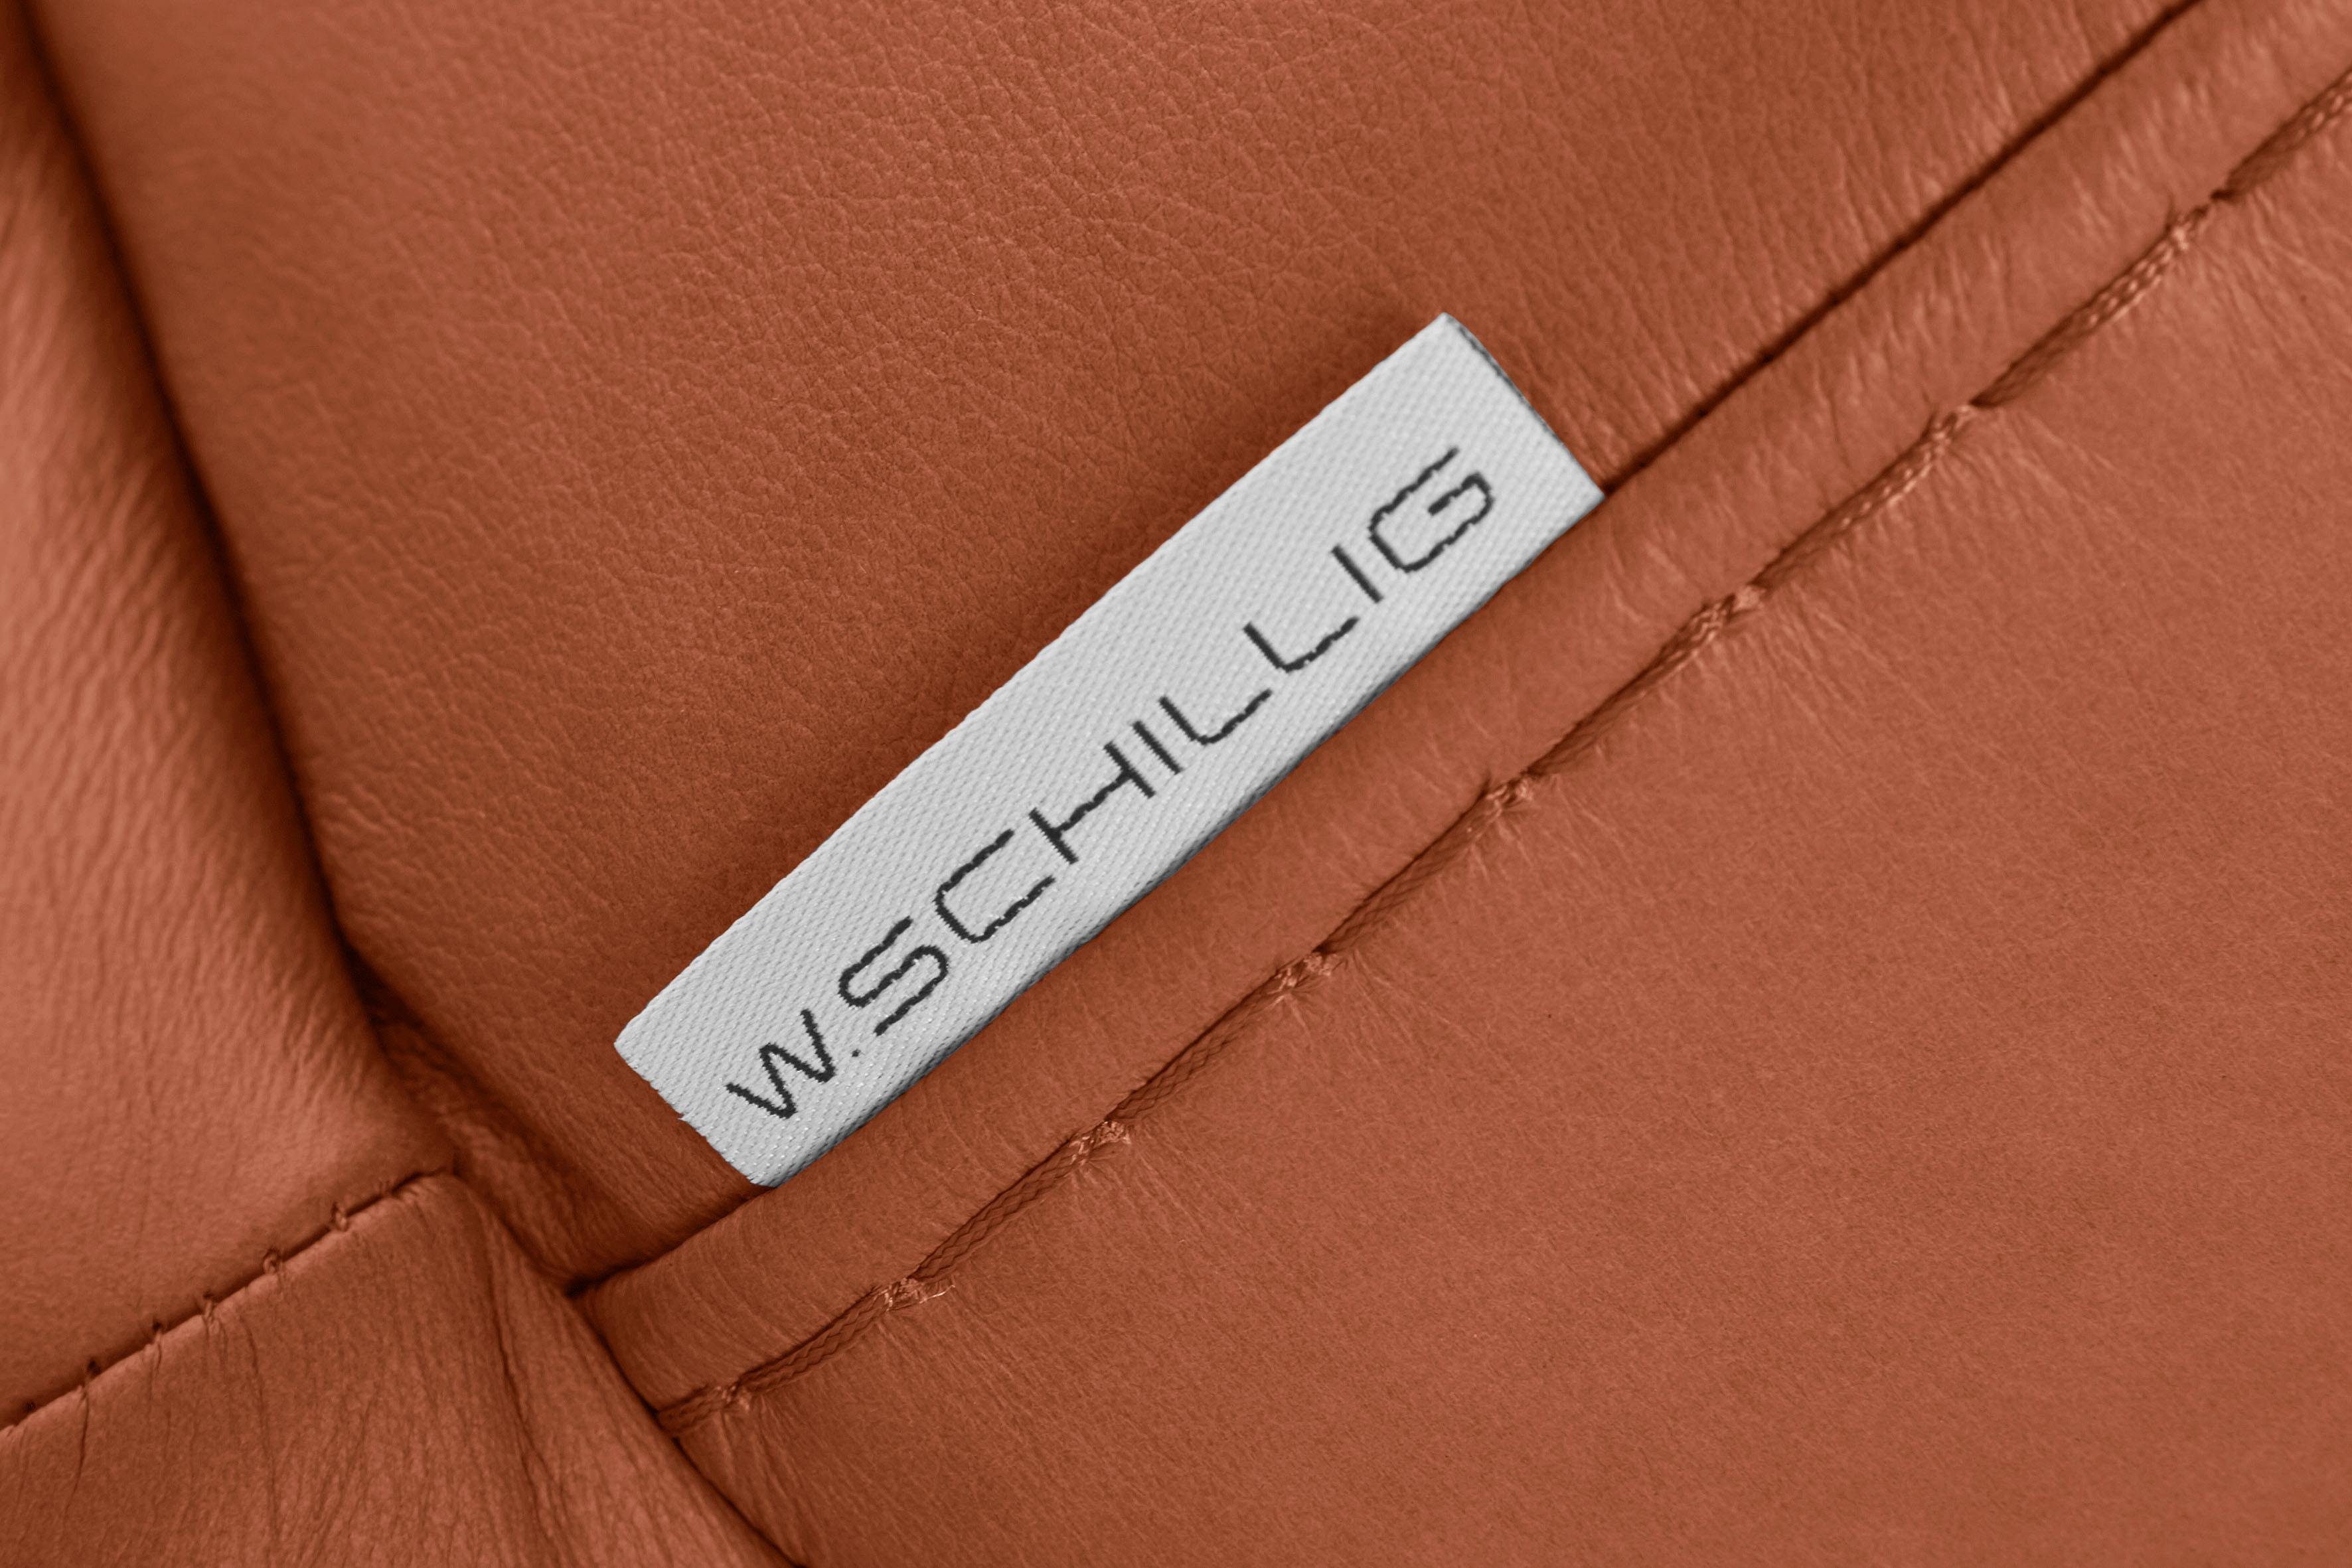 2,5-Sitzer mit montanaa, Metallfüßen matt, Silber Breite 212 in W.SCHILLIG cm